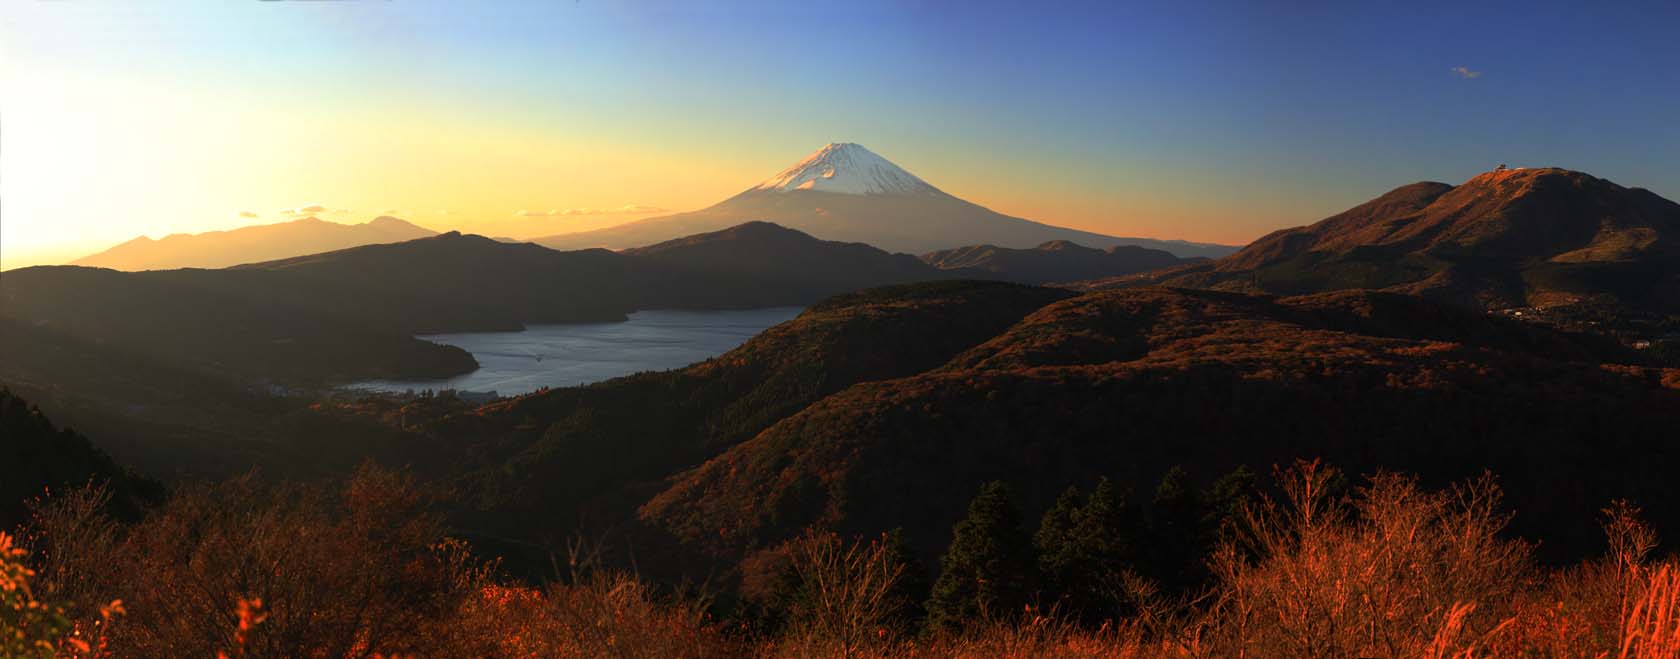 fotografia, material, livra, ajardine, imagine, proveja fotografia,O deus das montanhas e do Monte Fuji, , , , 